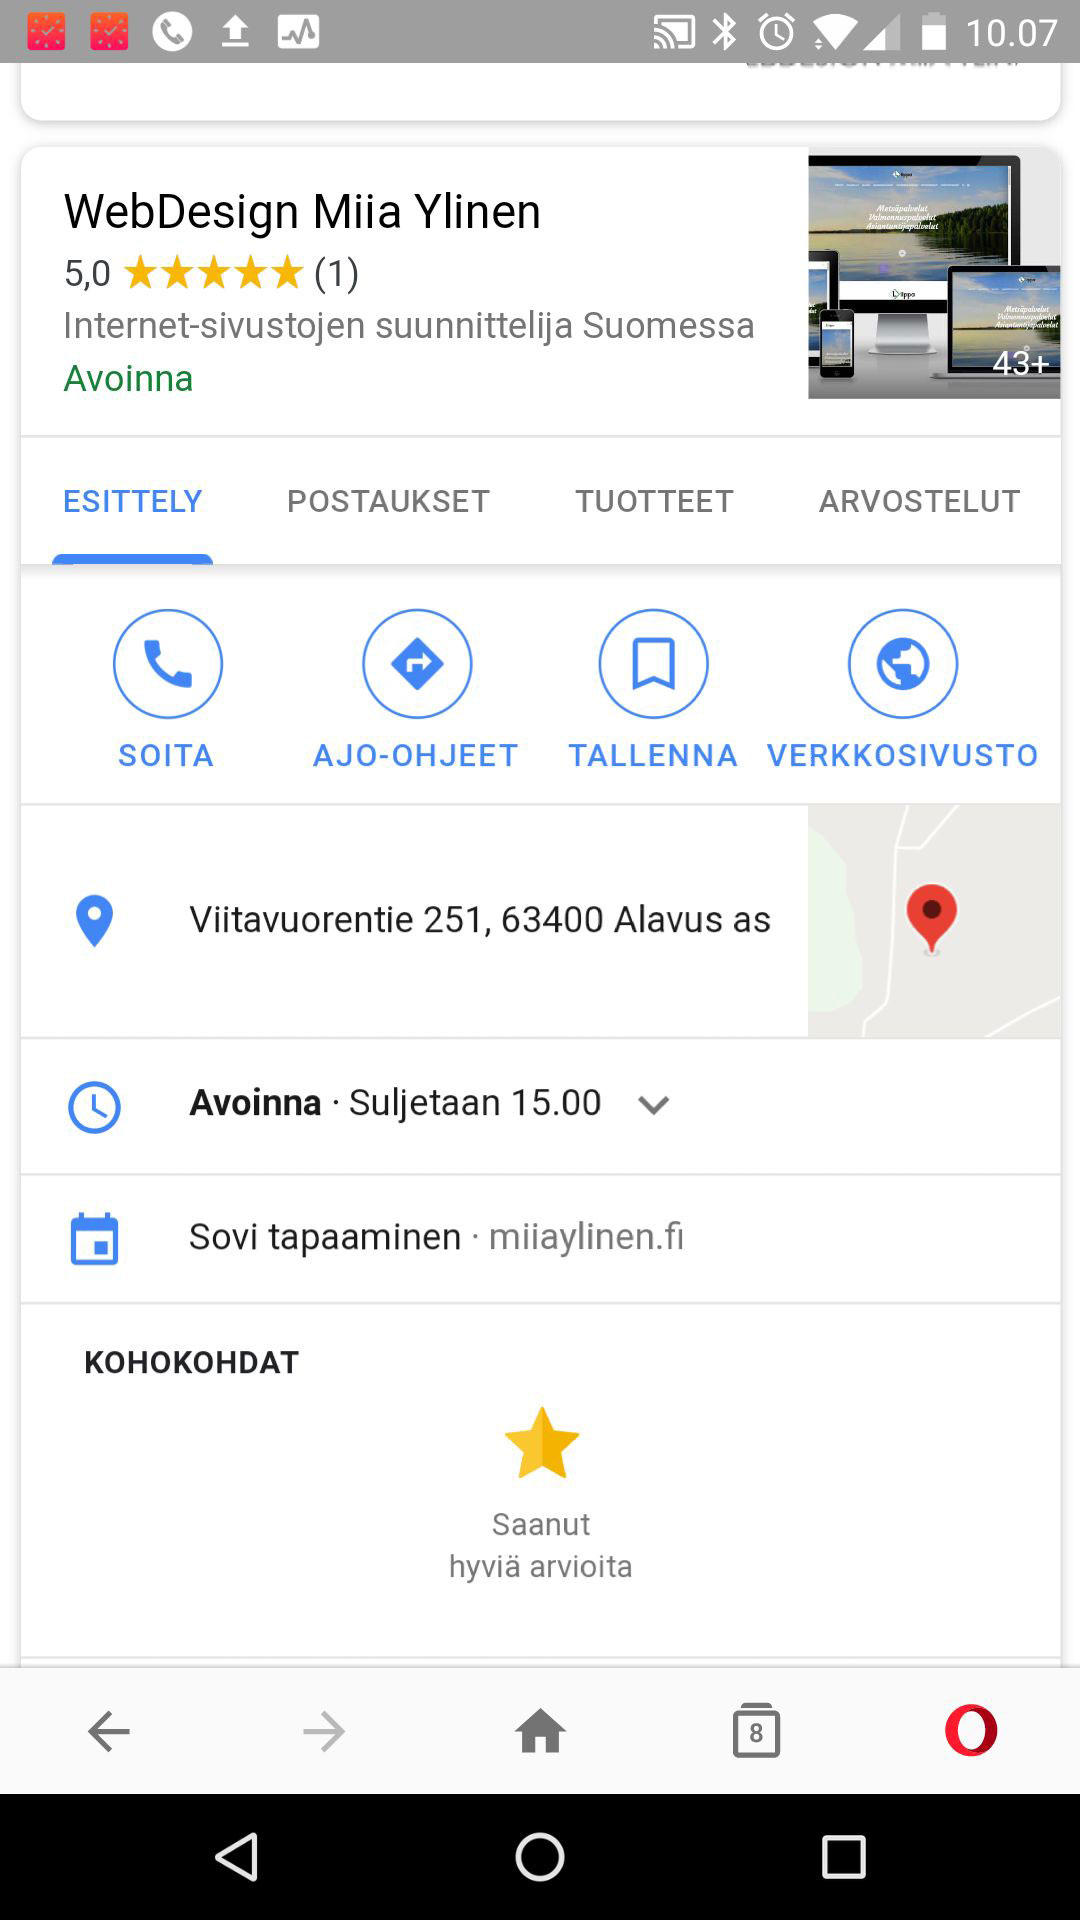 Tältä Google My Business -postaus näyttää puhelimella katsottuna. Yhteystietojen, reittiohjeiden, aukioloaikojen ja muun infon alapuolella näkyvät myös uusimmat postaukset!